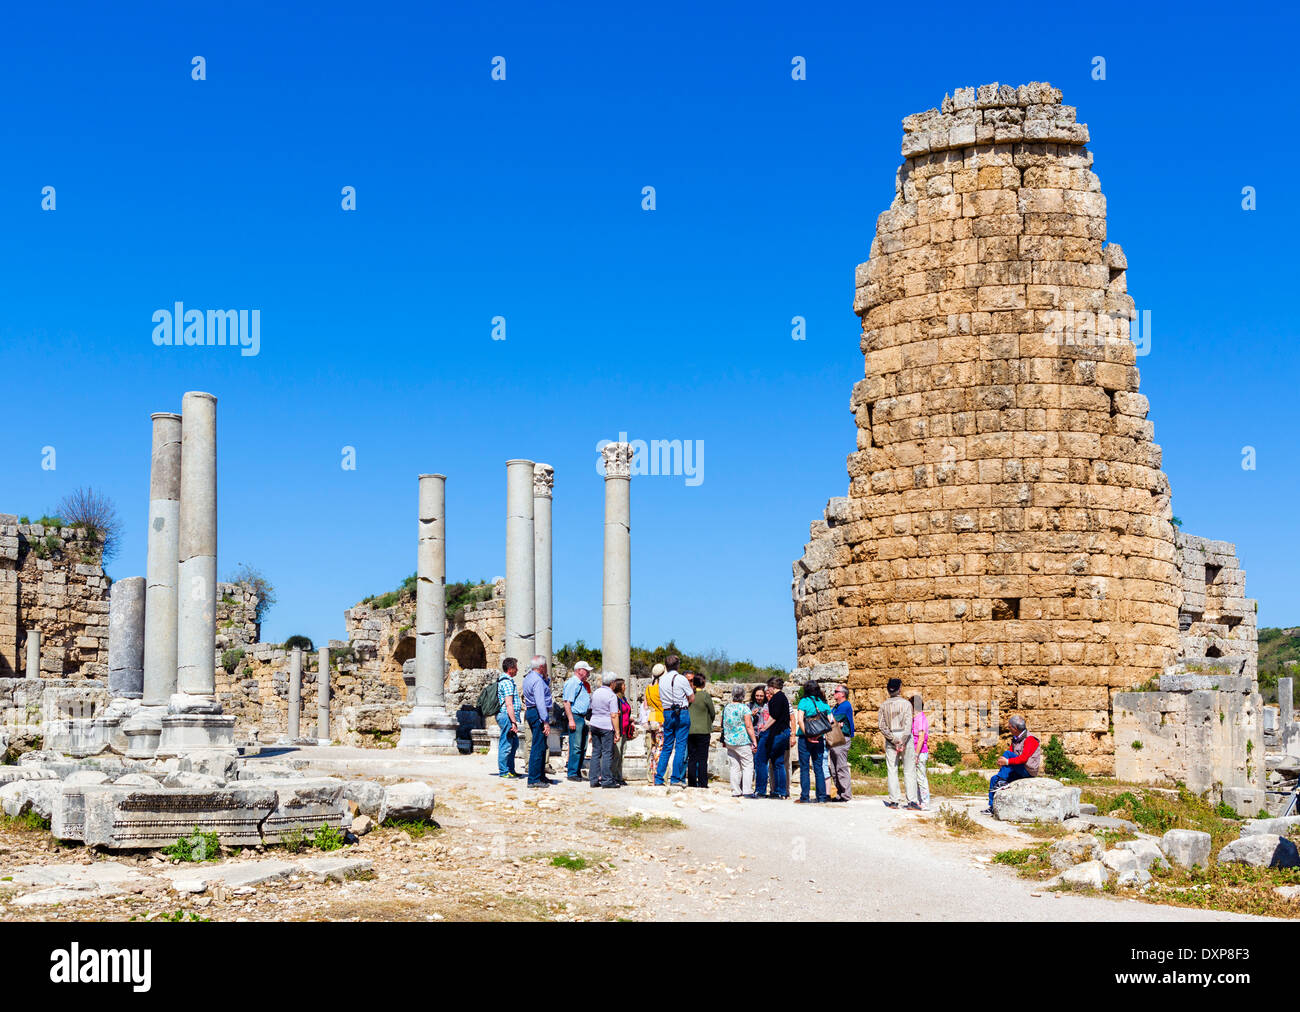 Cerca de la puerta helenística en las ruinas de la antigua ciudad griega de Perge, Panfilia, provincia de Antalya, Turquía Foto de stock